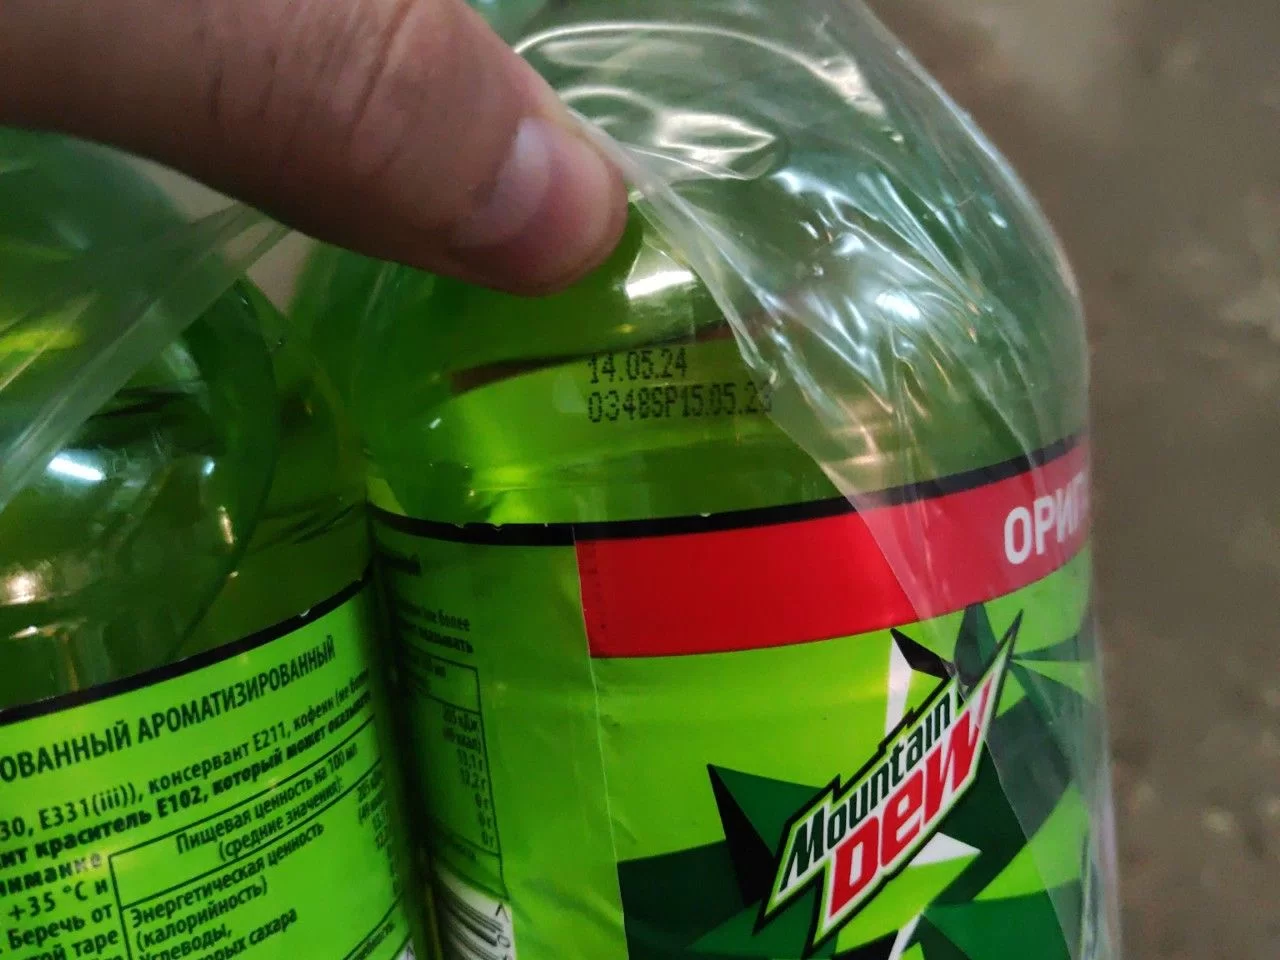 Газированный напиток Mountain Dew 1.5 л. (РФ) - 1 бутылка - фотография № 10